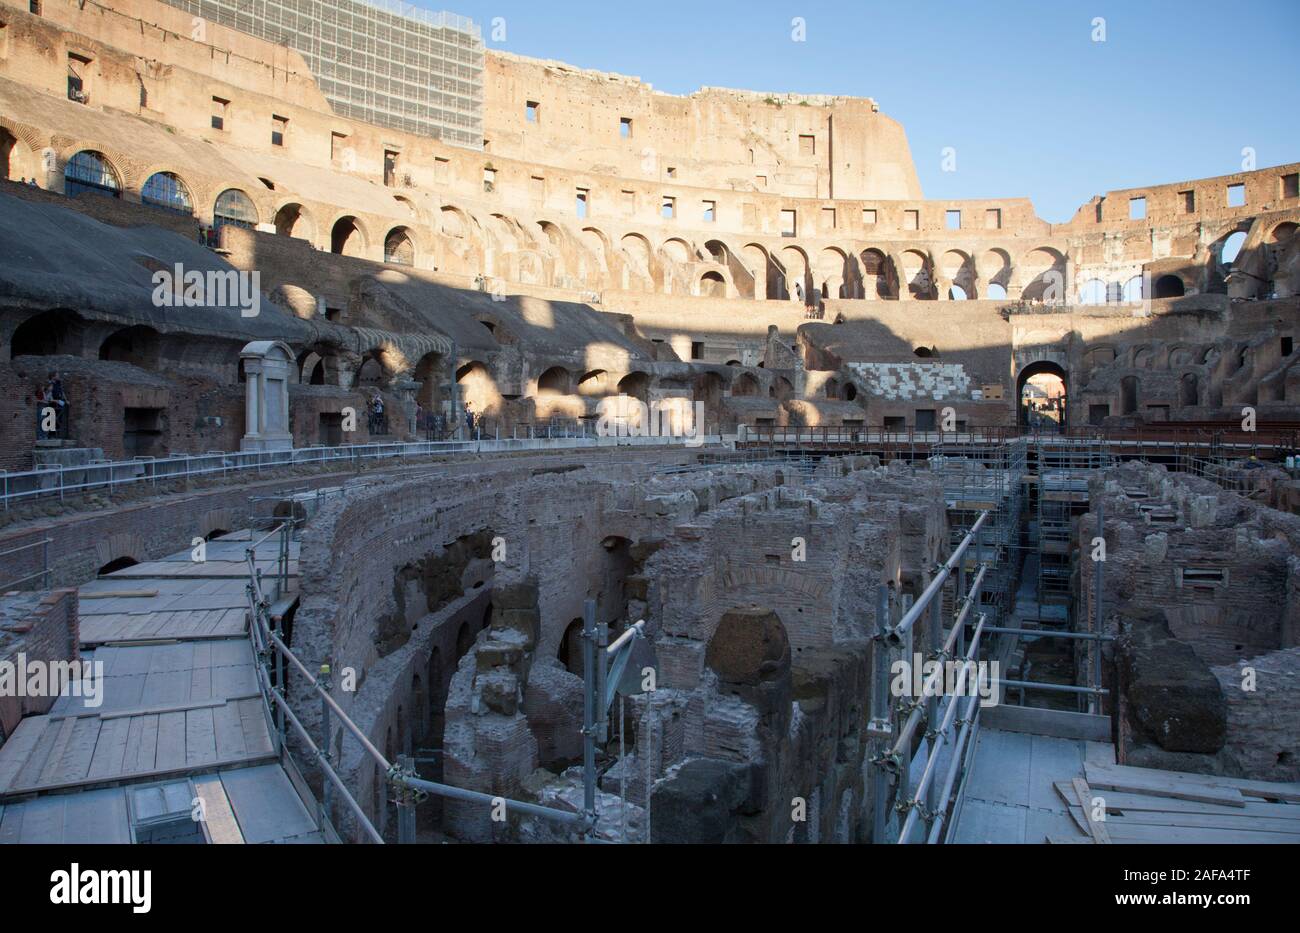 L'intérieur du Colisée ou le Colisée de Rome montrant les travaux de rénovation et de restauration Banque D'Images